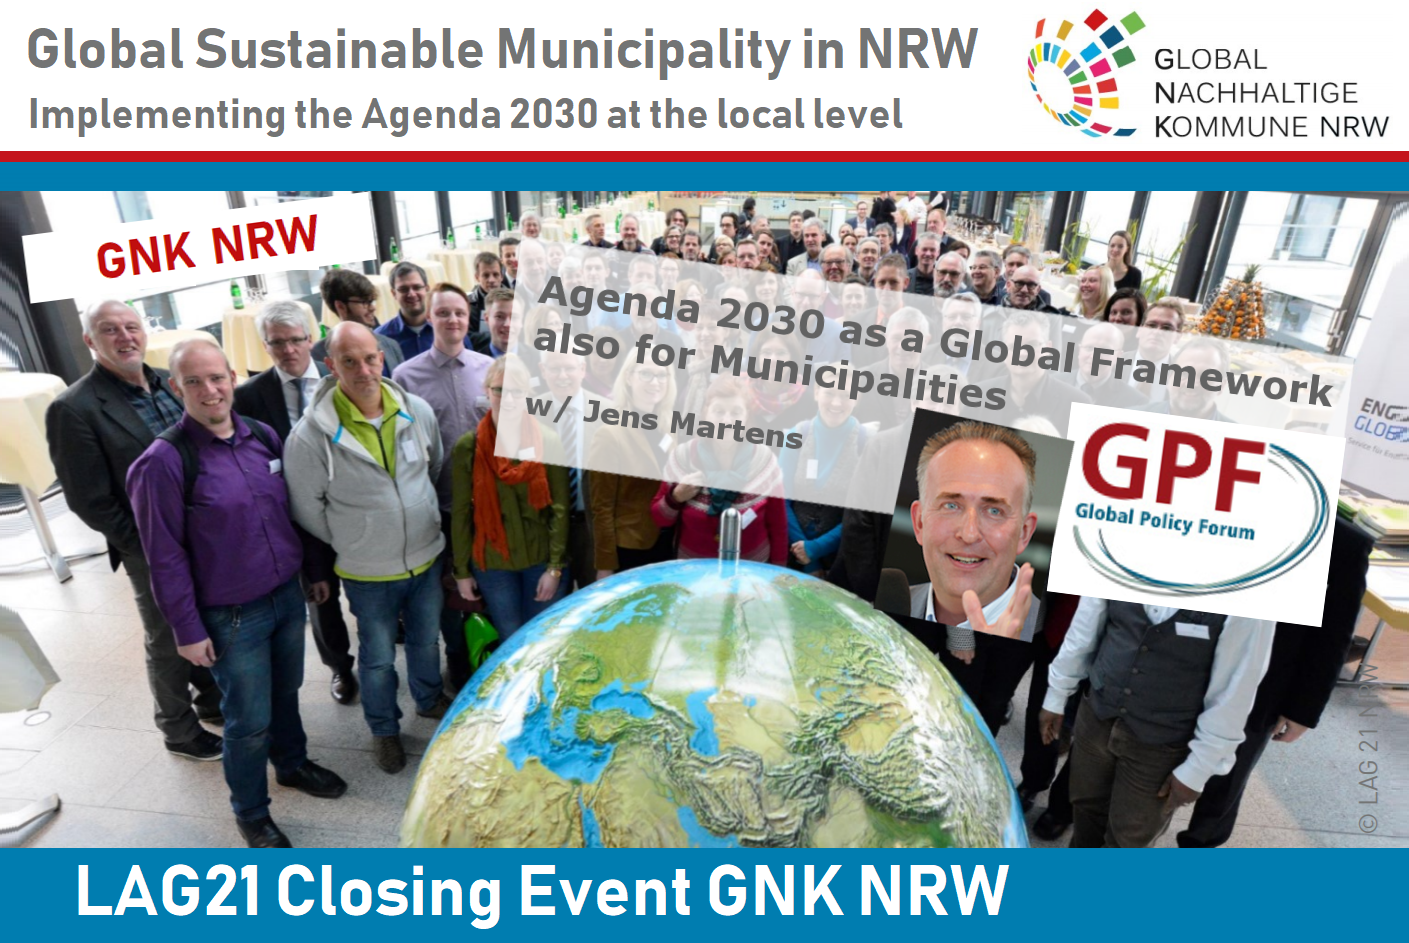 GNK NRW, Agenda 2030 as a Global Framework also for Municipalities